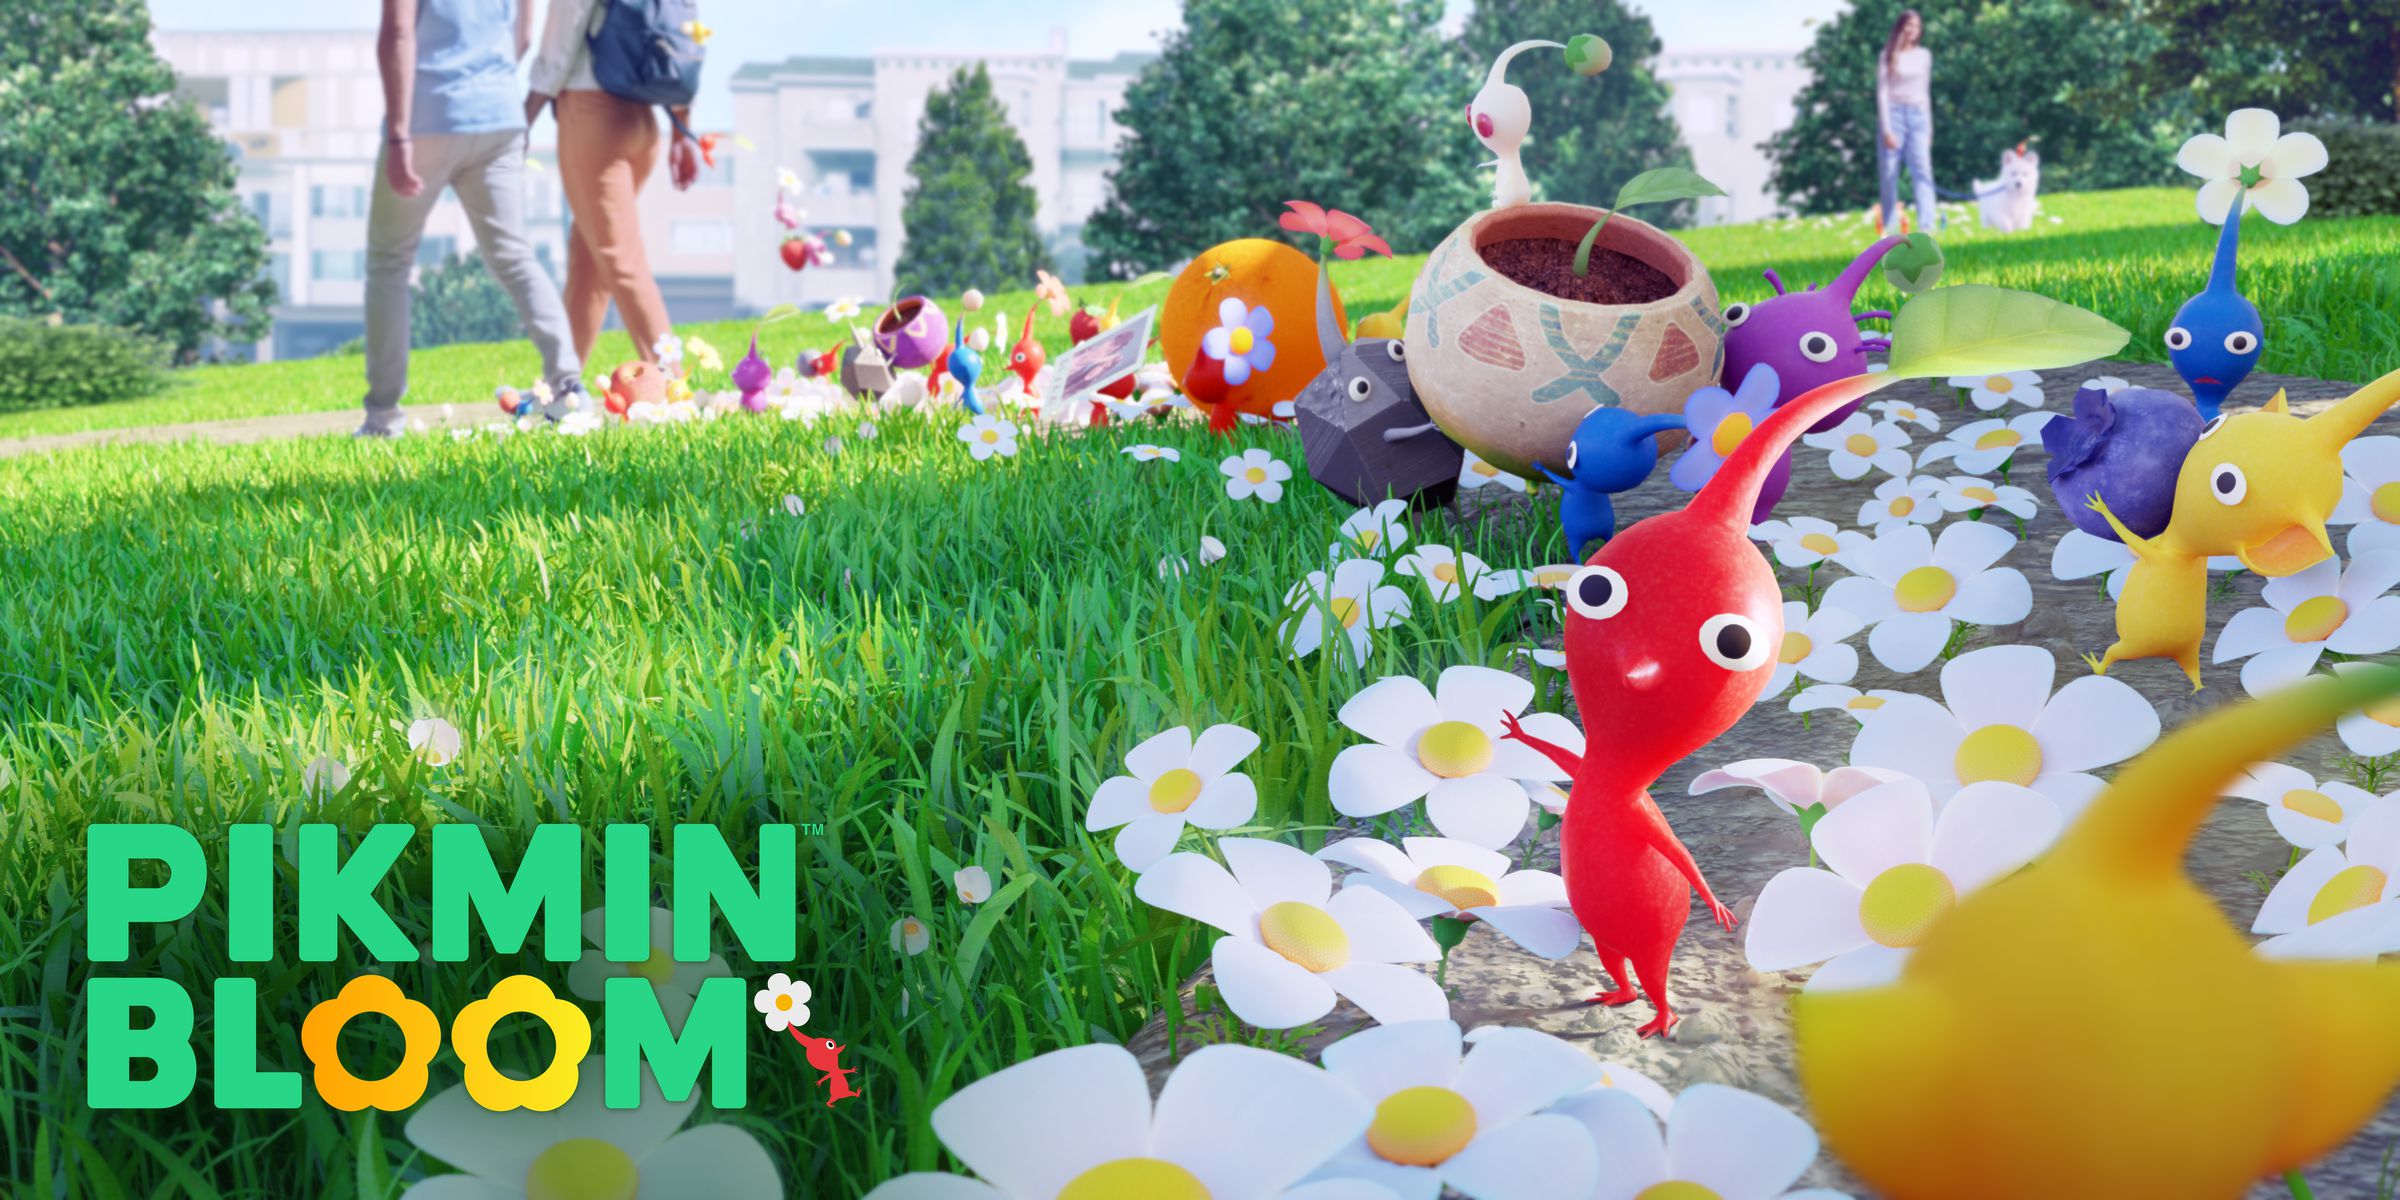 Ảnh chụp màn hình Pikmin Bloom: Những sinh vật nhỏ đầy màu sắc với cái đầu to giữa khu vườn đầy hoa cúc.